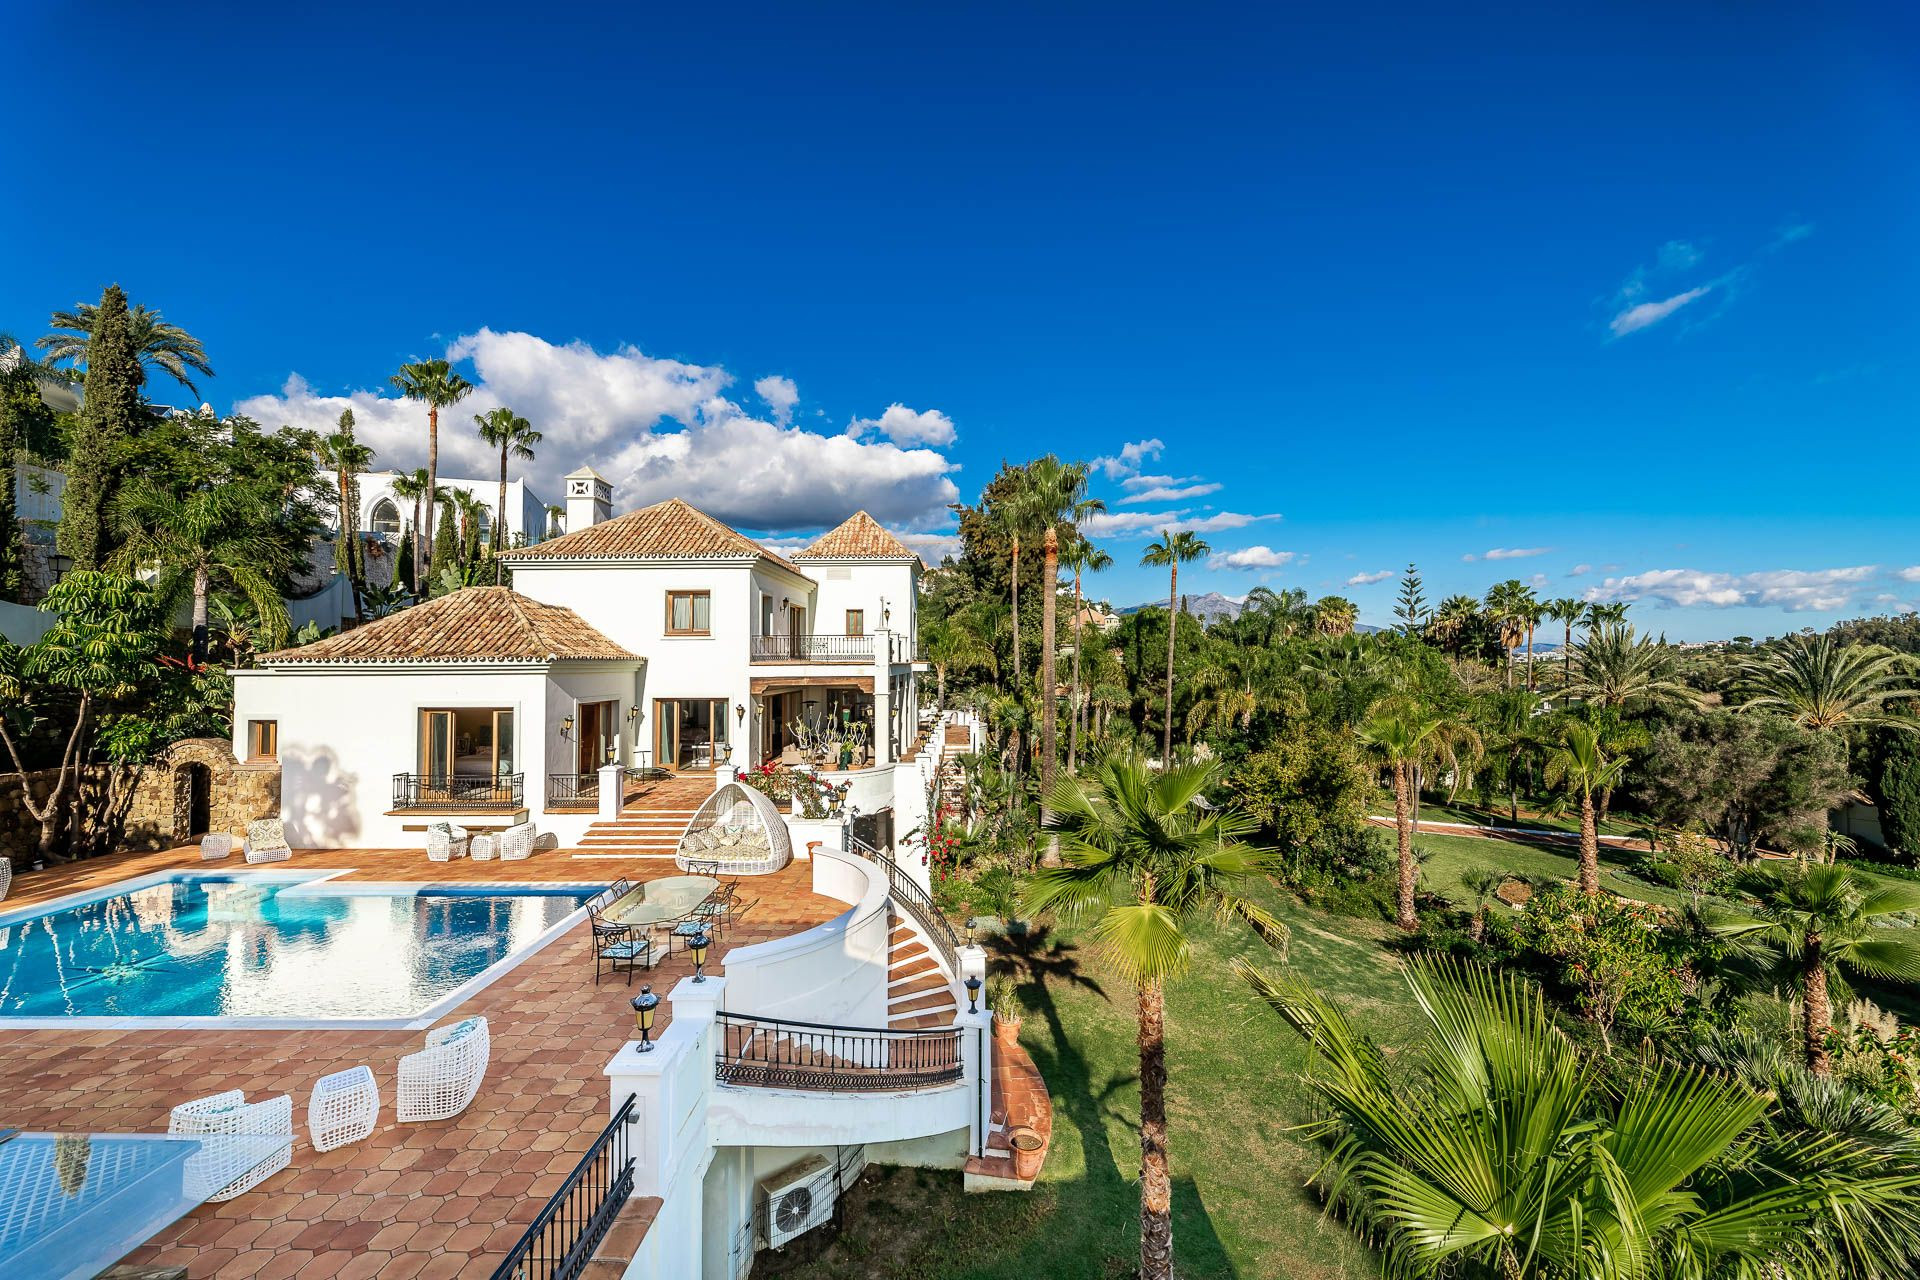 Lujoso palacete mediterráneo de 16 habitaciones situado en la zona de El Paraíso Alto rodeado de los mejores campos de golf de la Costa del Sol